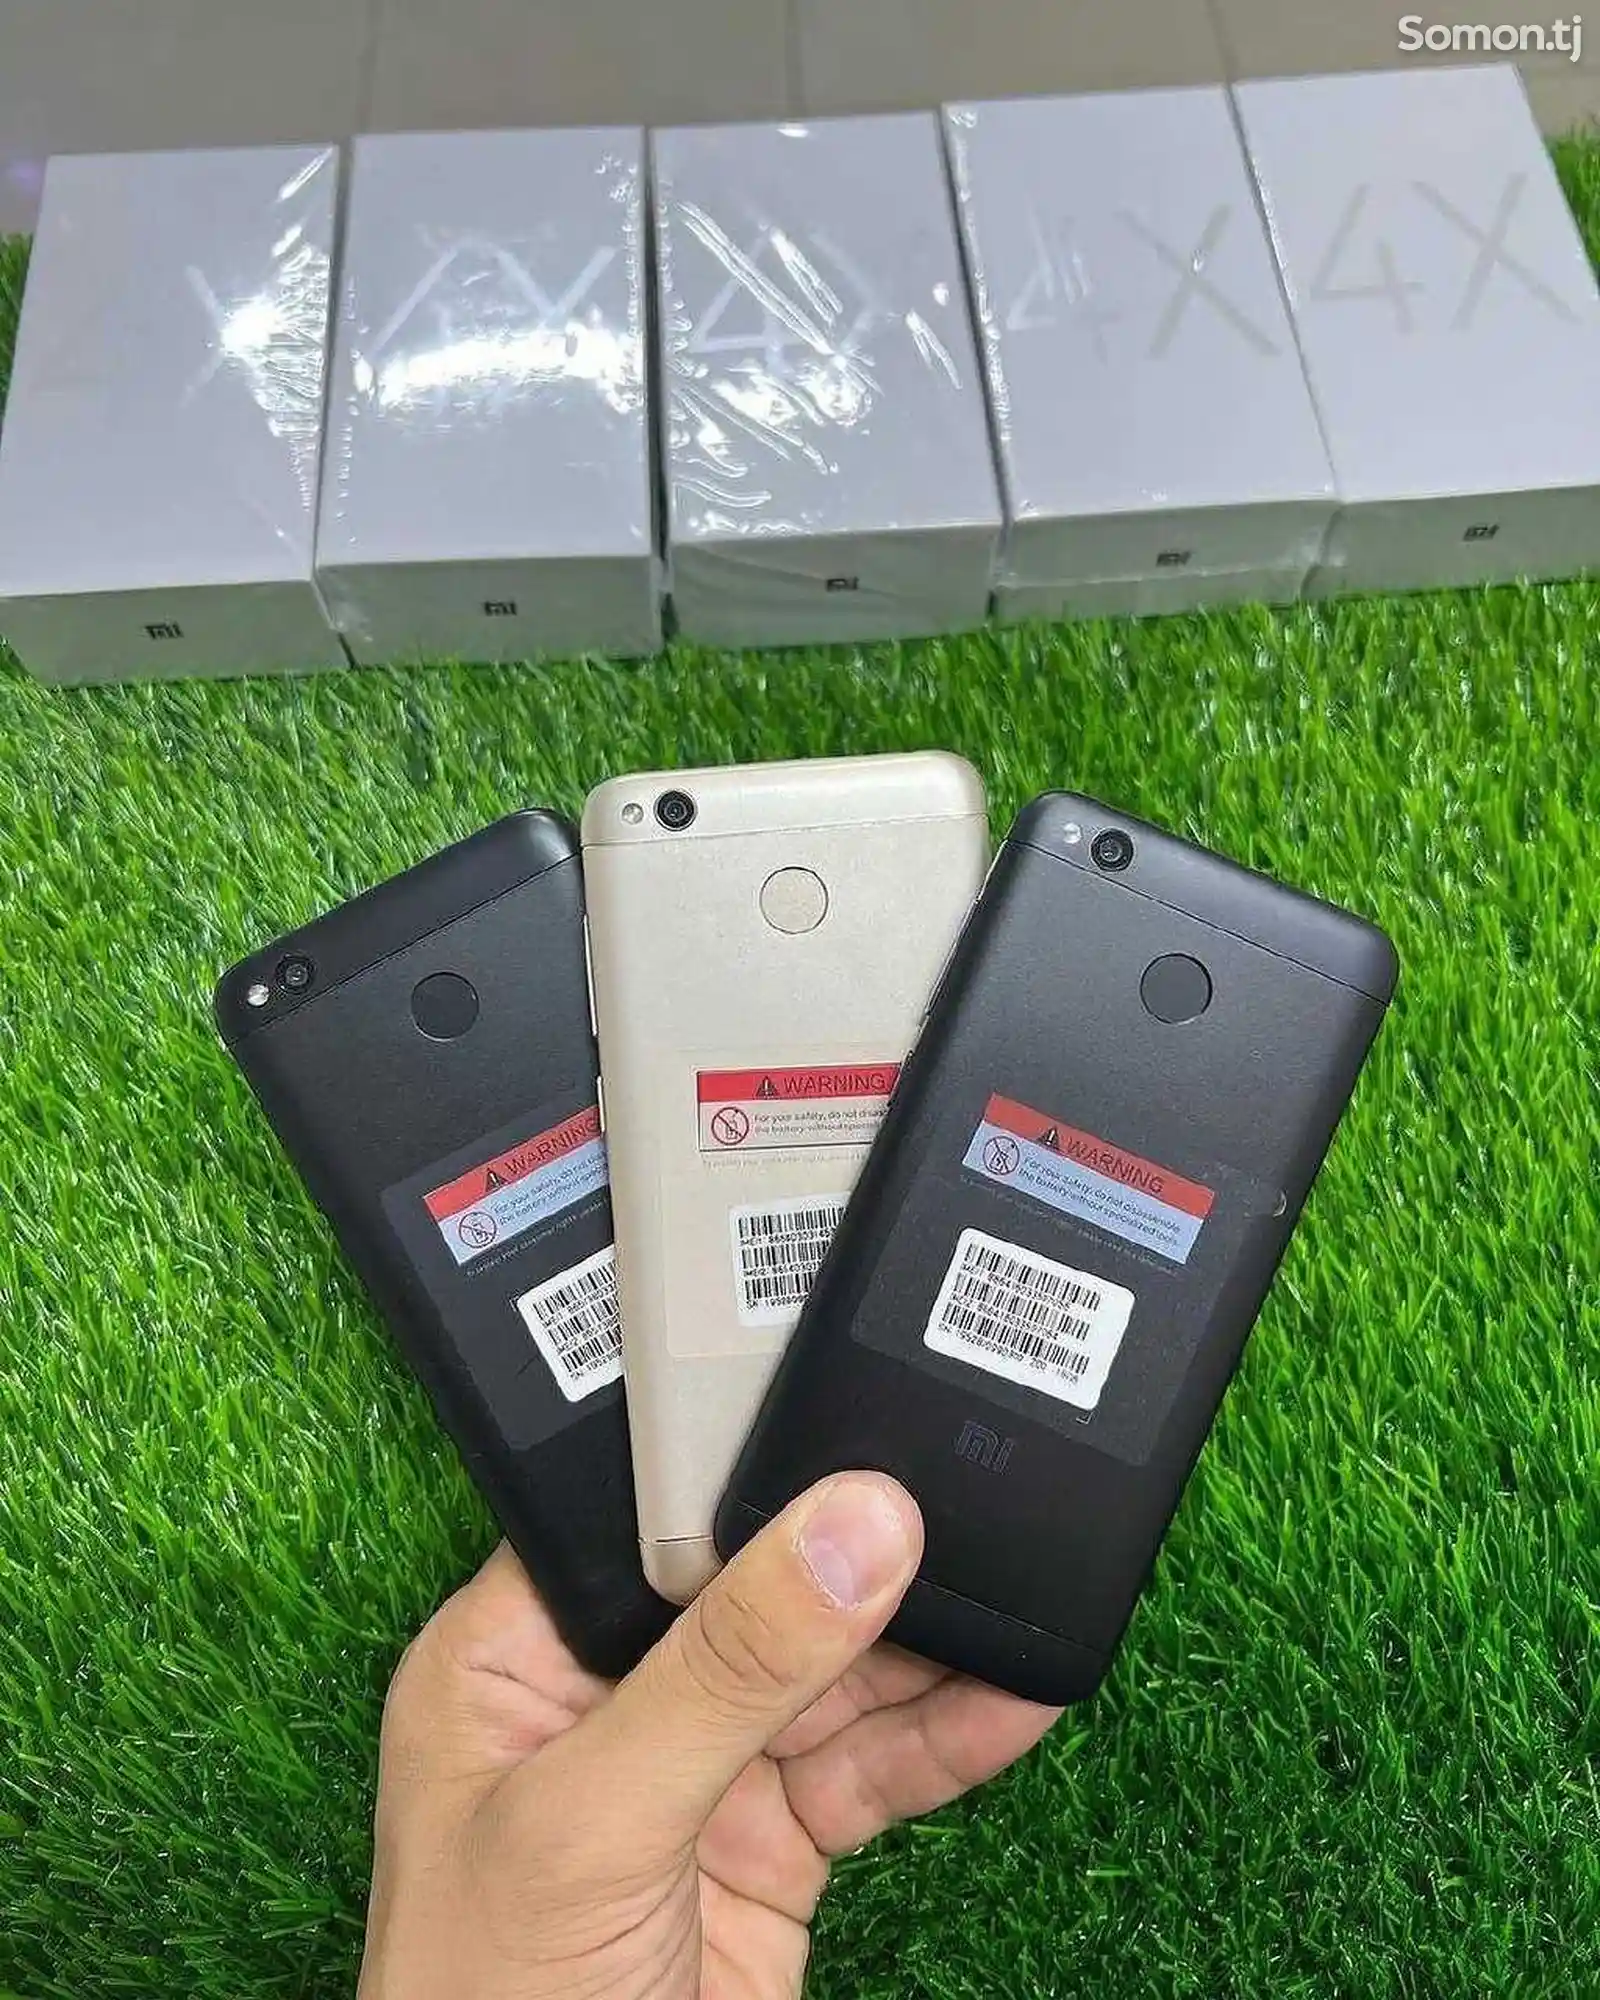 Xiaomi Redmi 4X-2